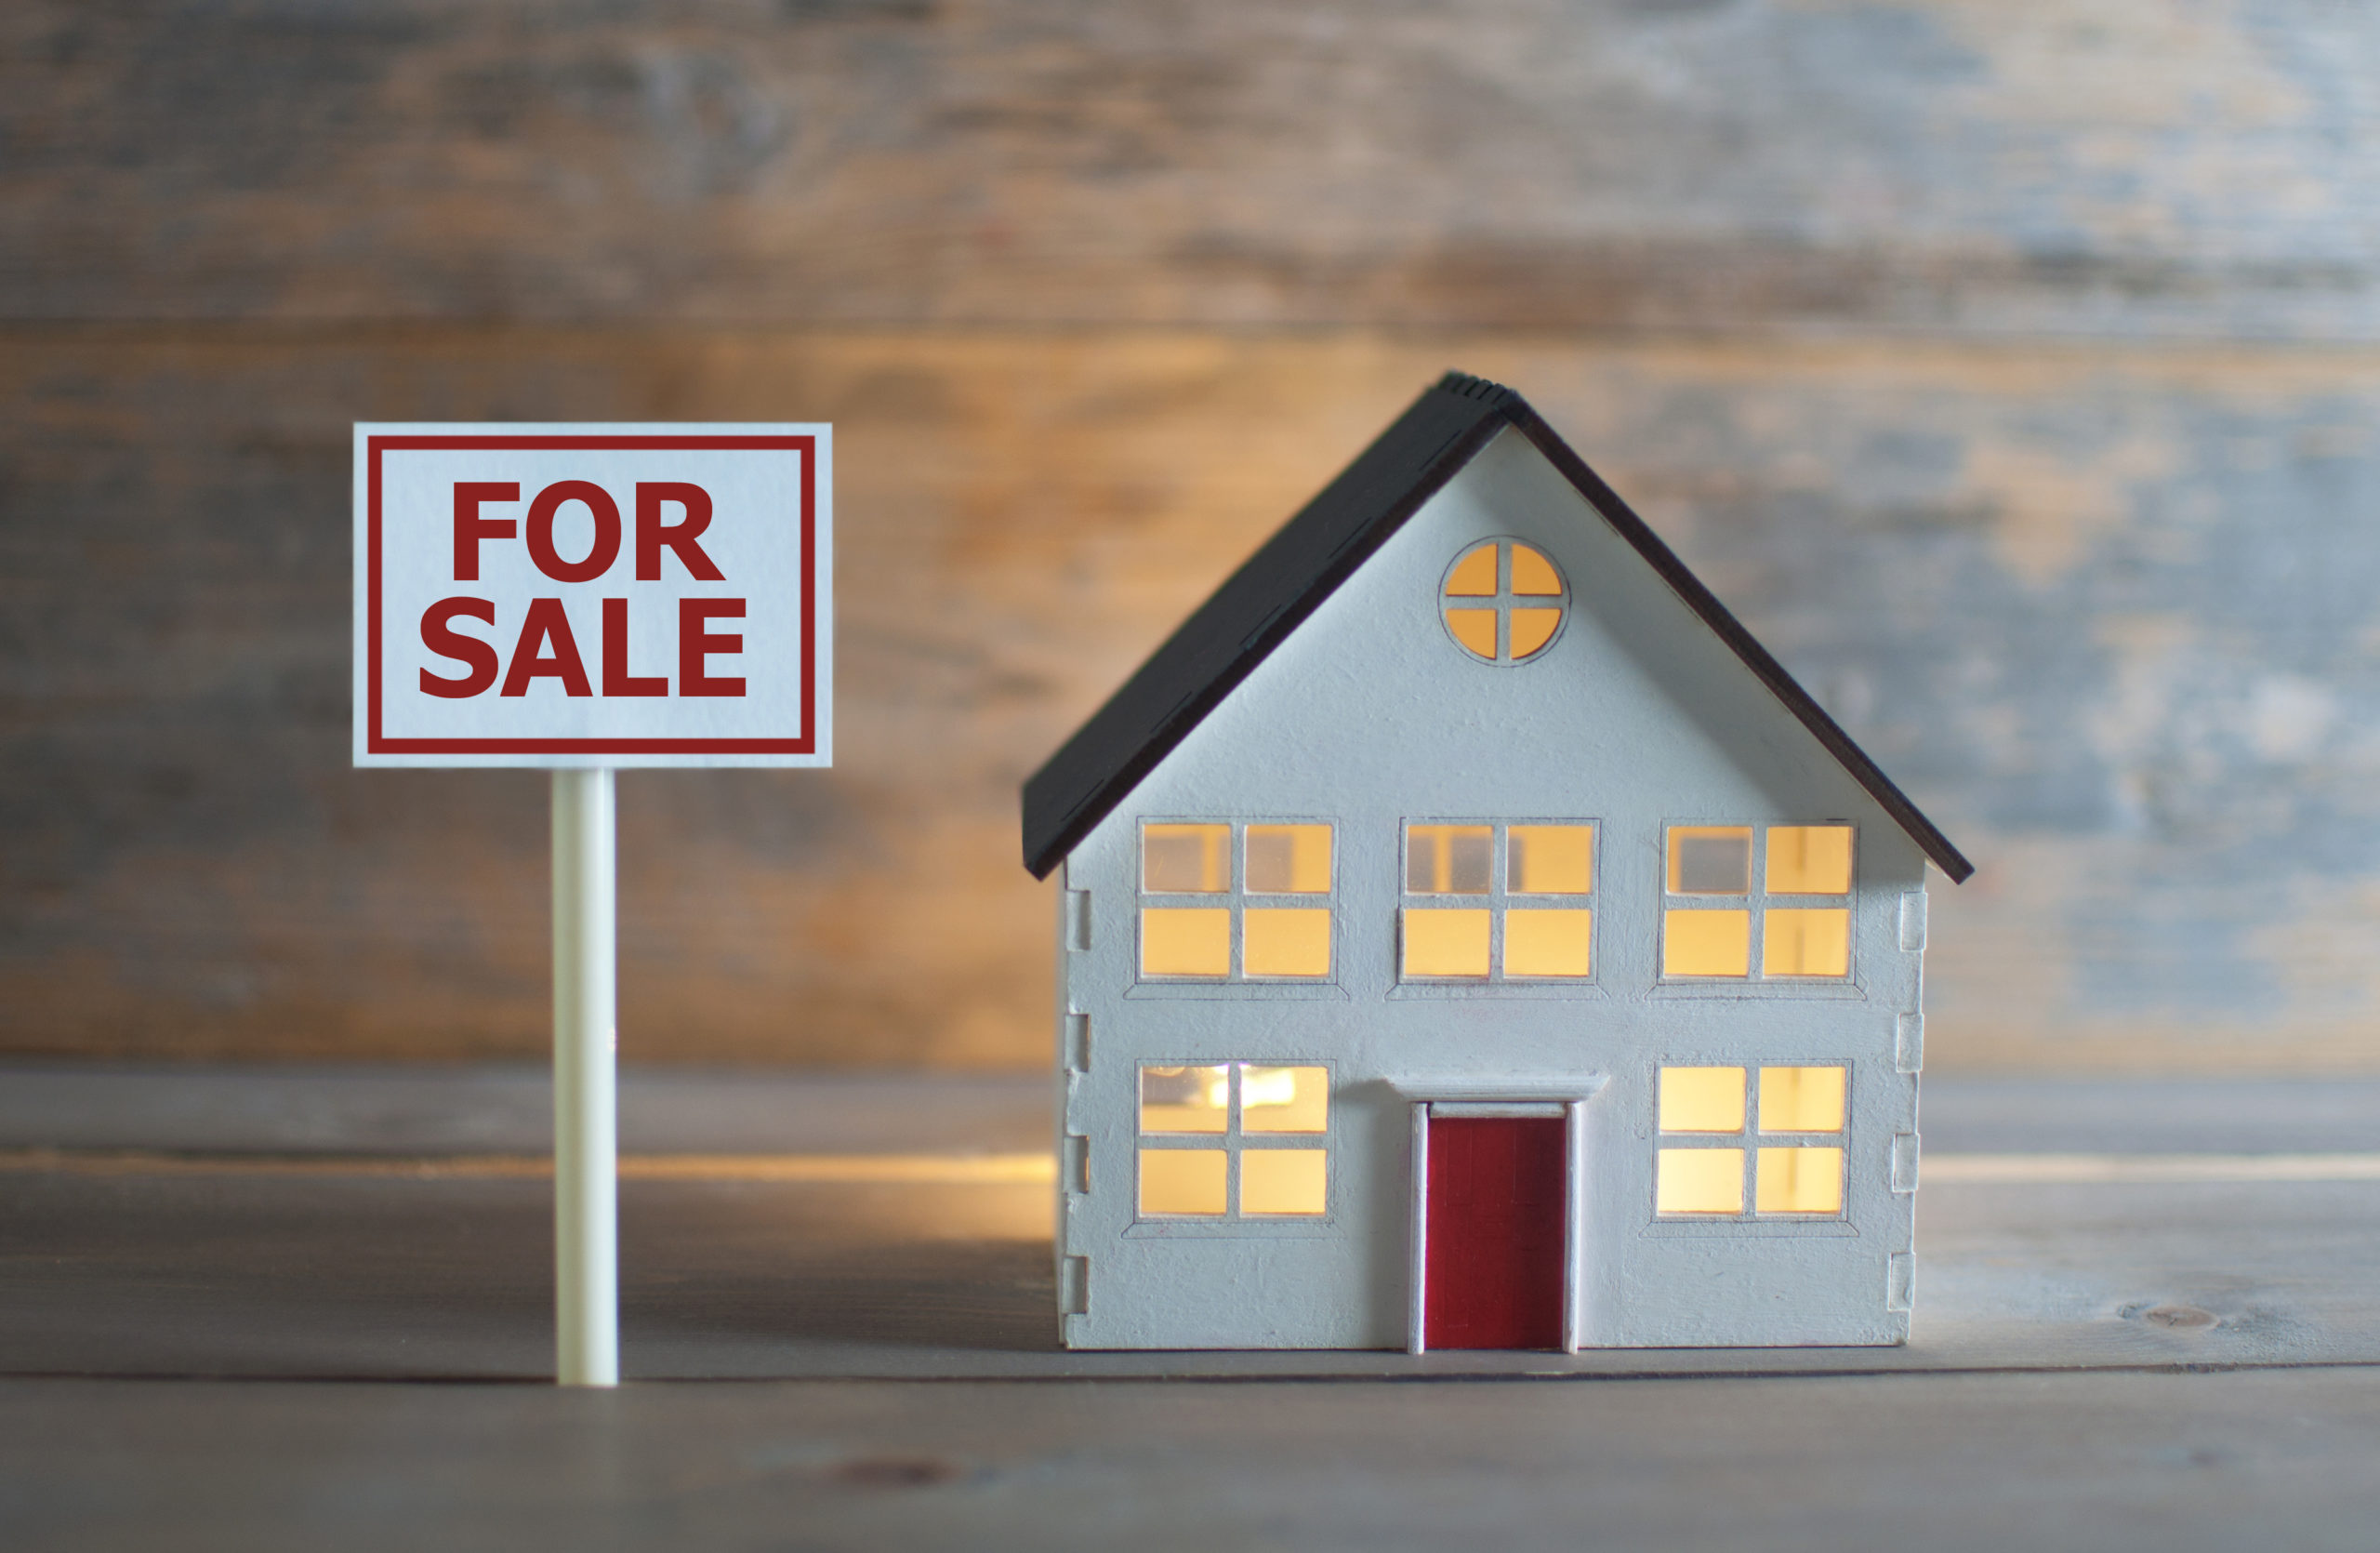 Votre bien immobilier ne se vend pas : que faire ?